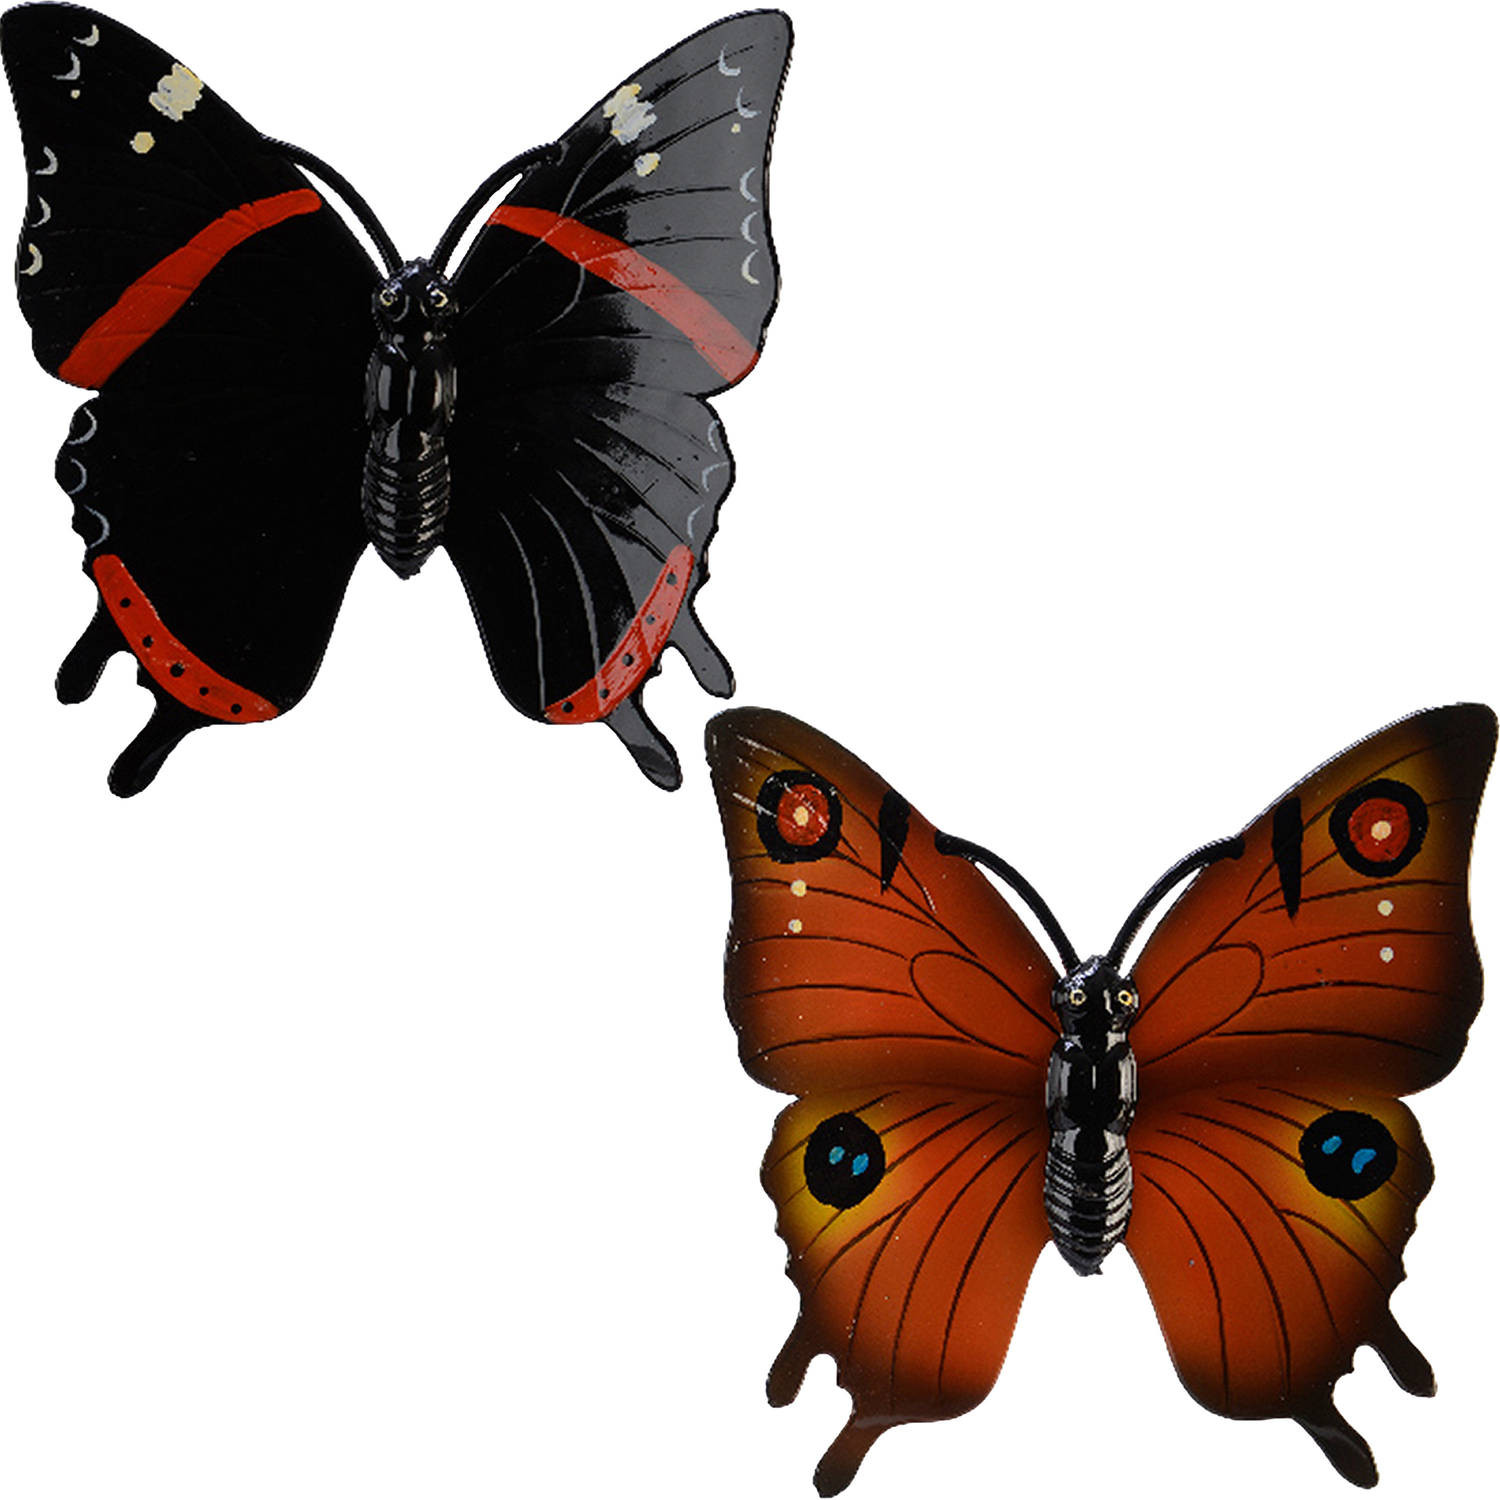 2x stuks tuin decoratie vlinders - kunststof - oranje - zwart - 24 x 24 cm - Tuinbeelden